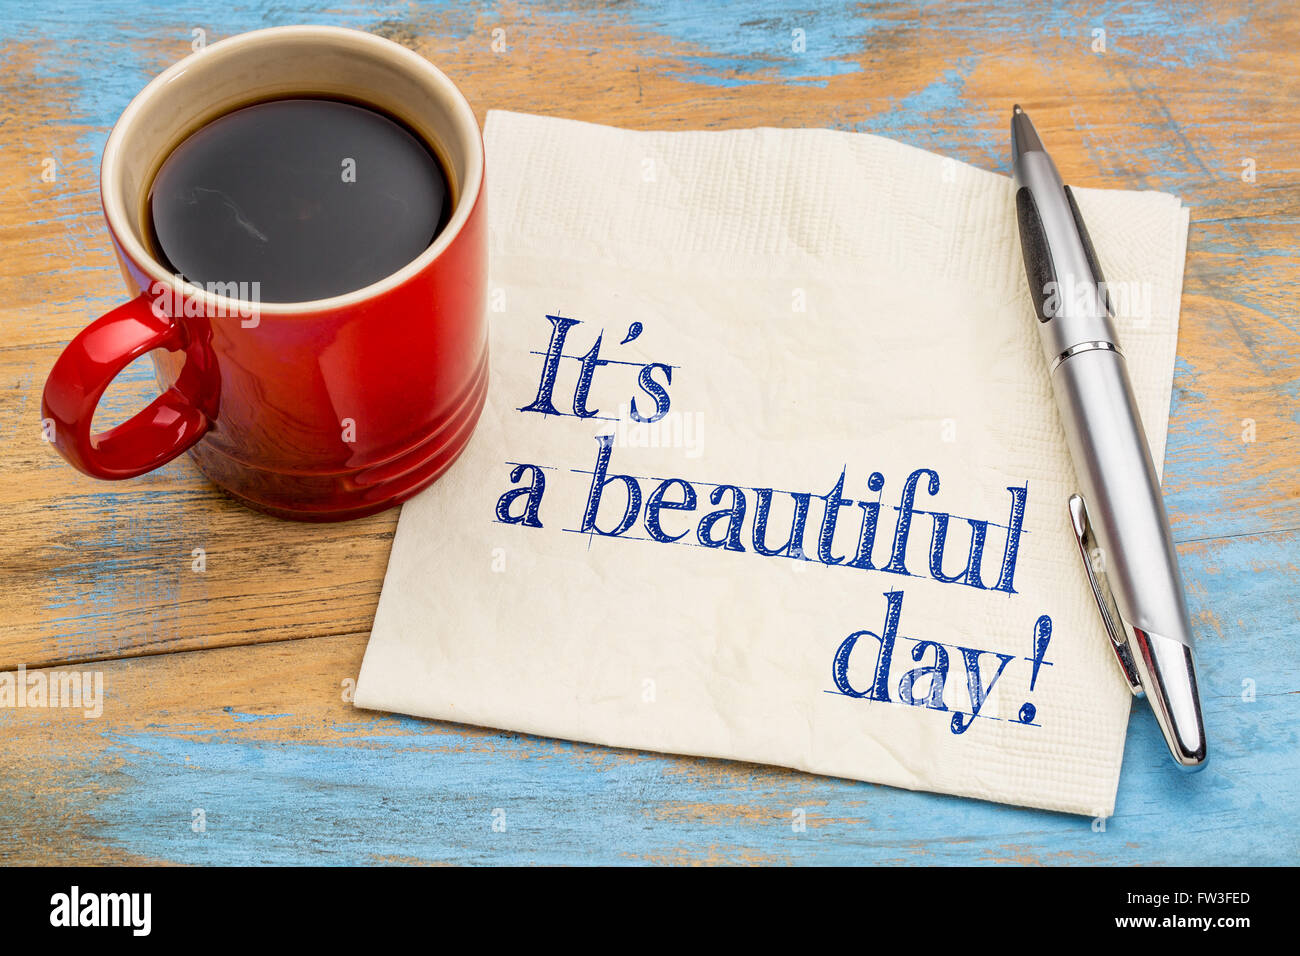 Es un hermoso día! La escritura en una servilleta con una taza de café - concepto de buen humor. Foto de stock